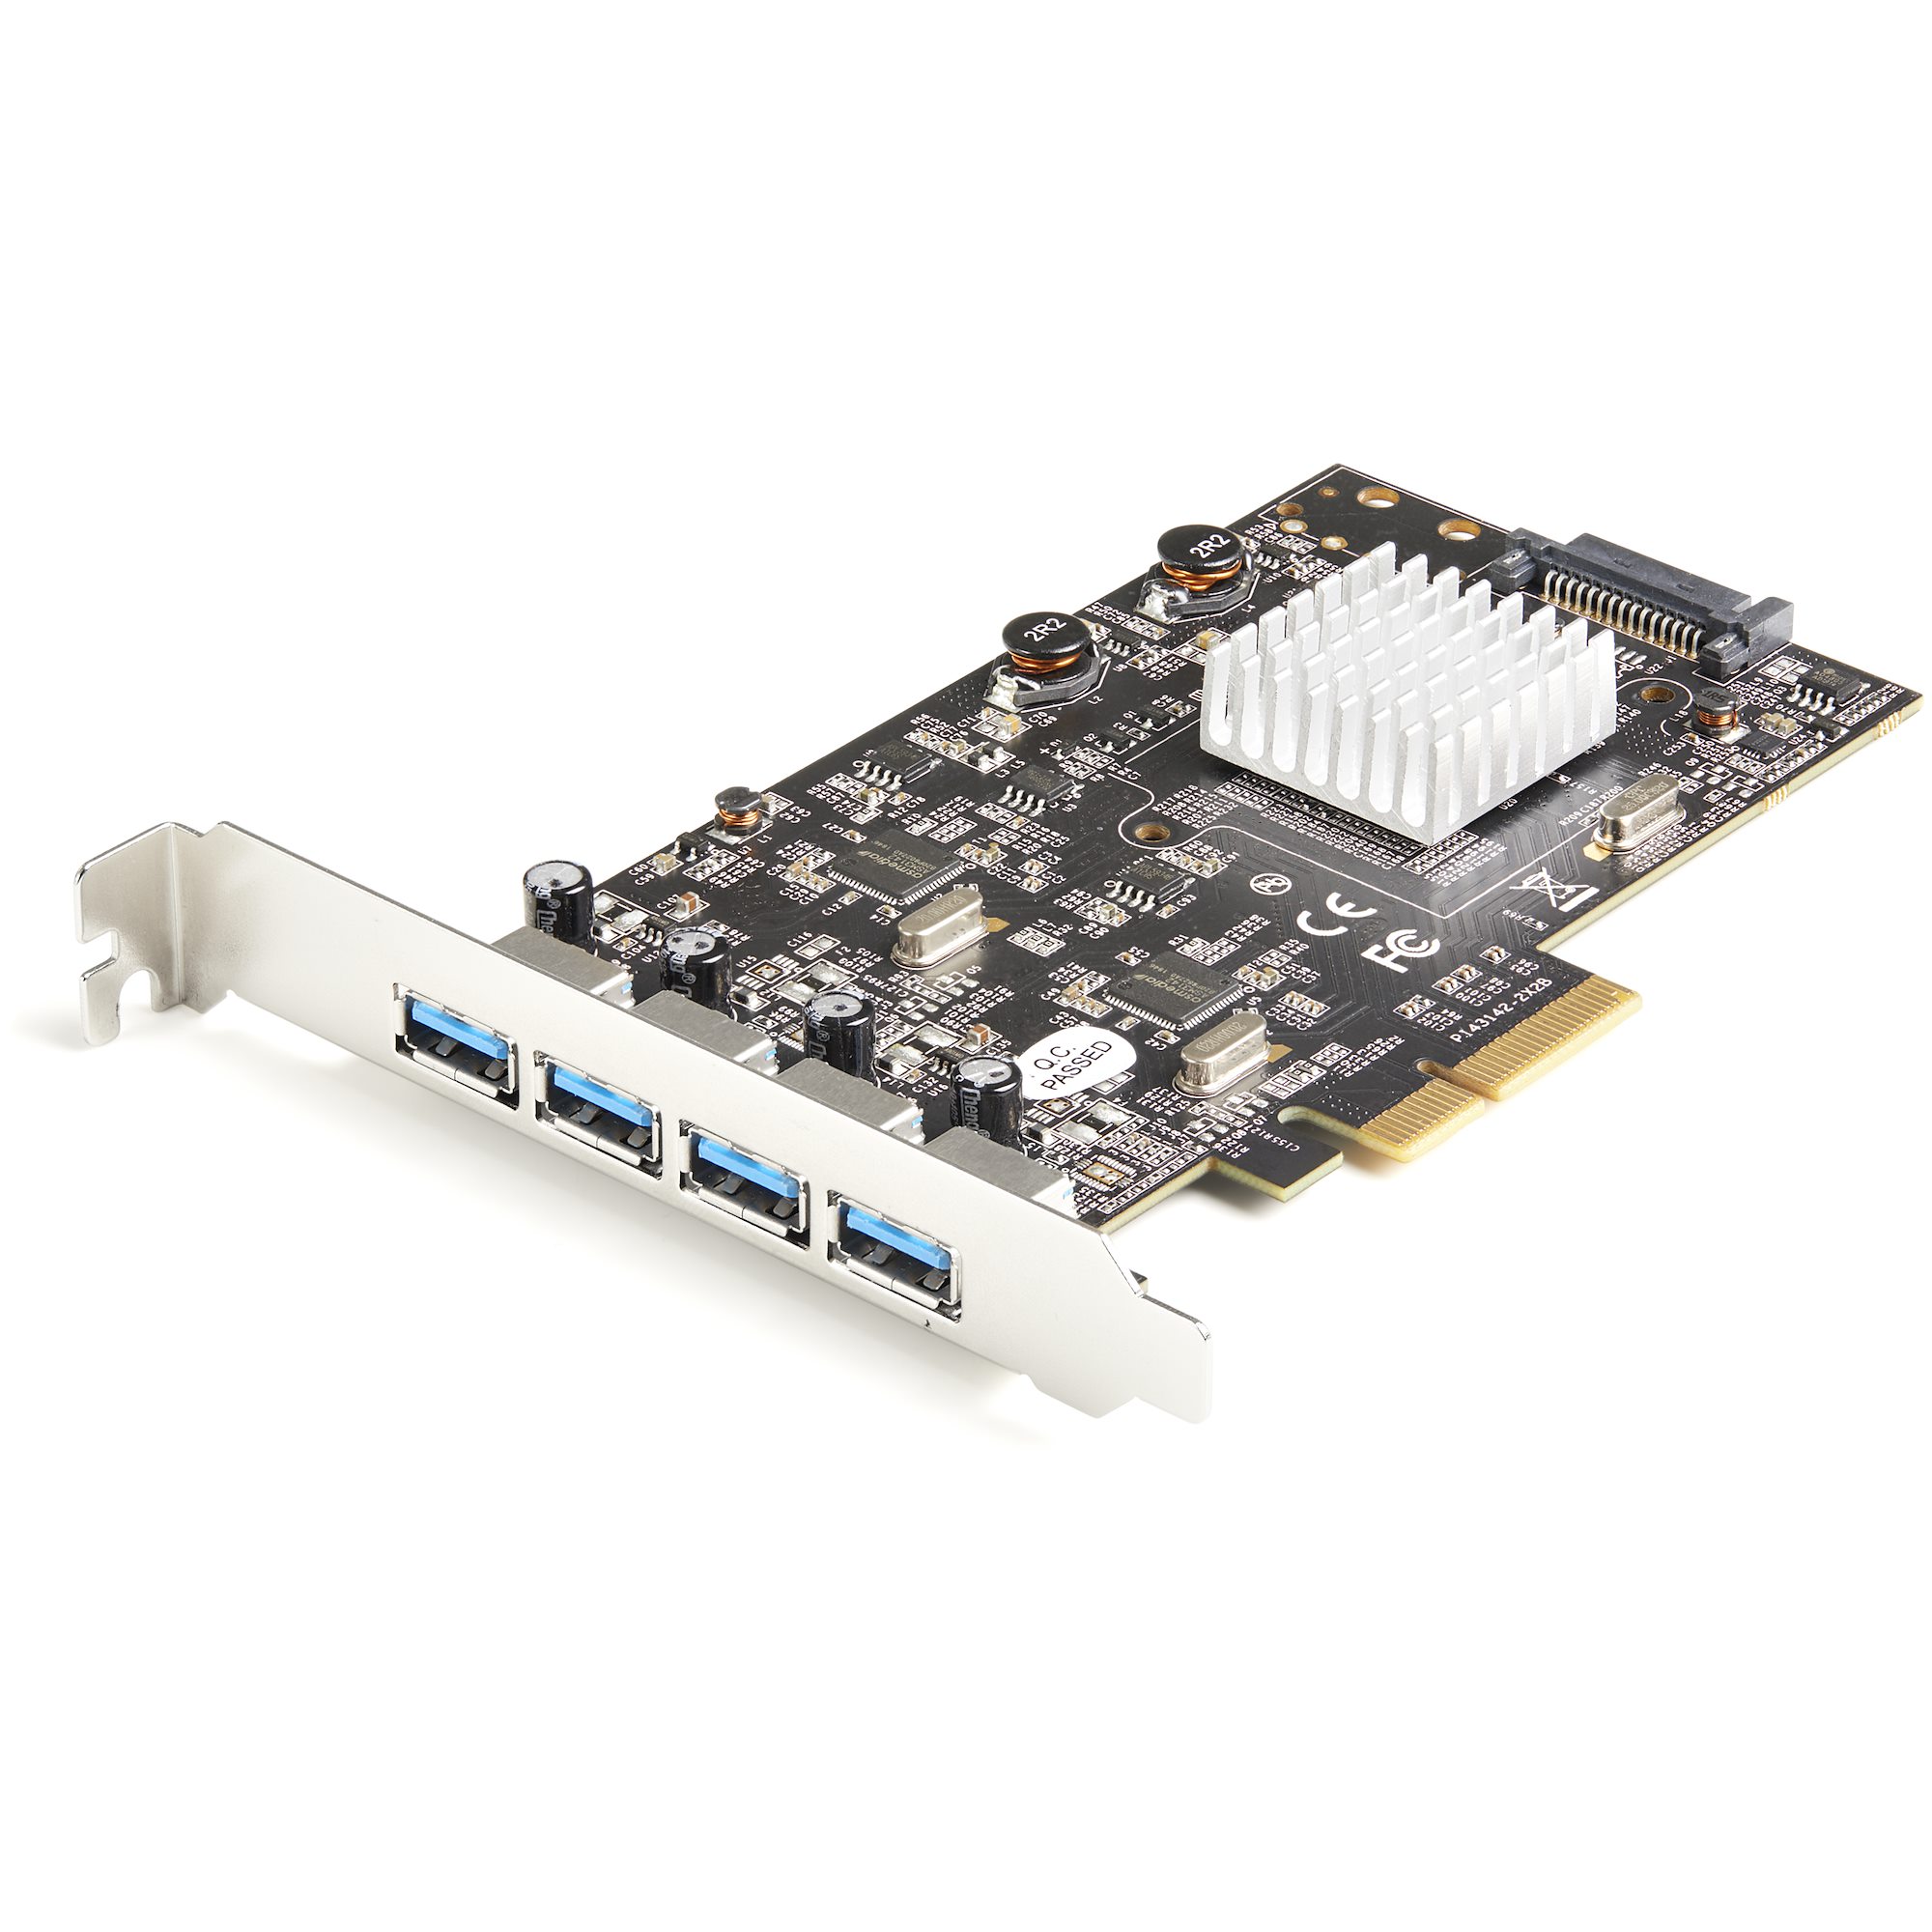 【PEXUSB314A2V2】USB 3.2 GEN 2 PCIE CARD